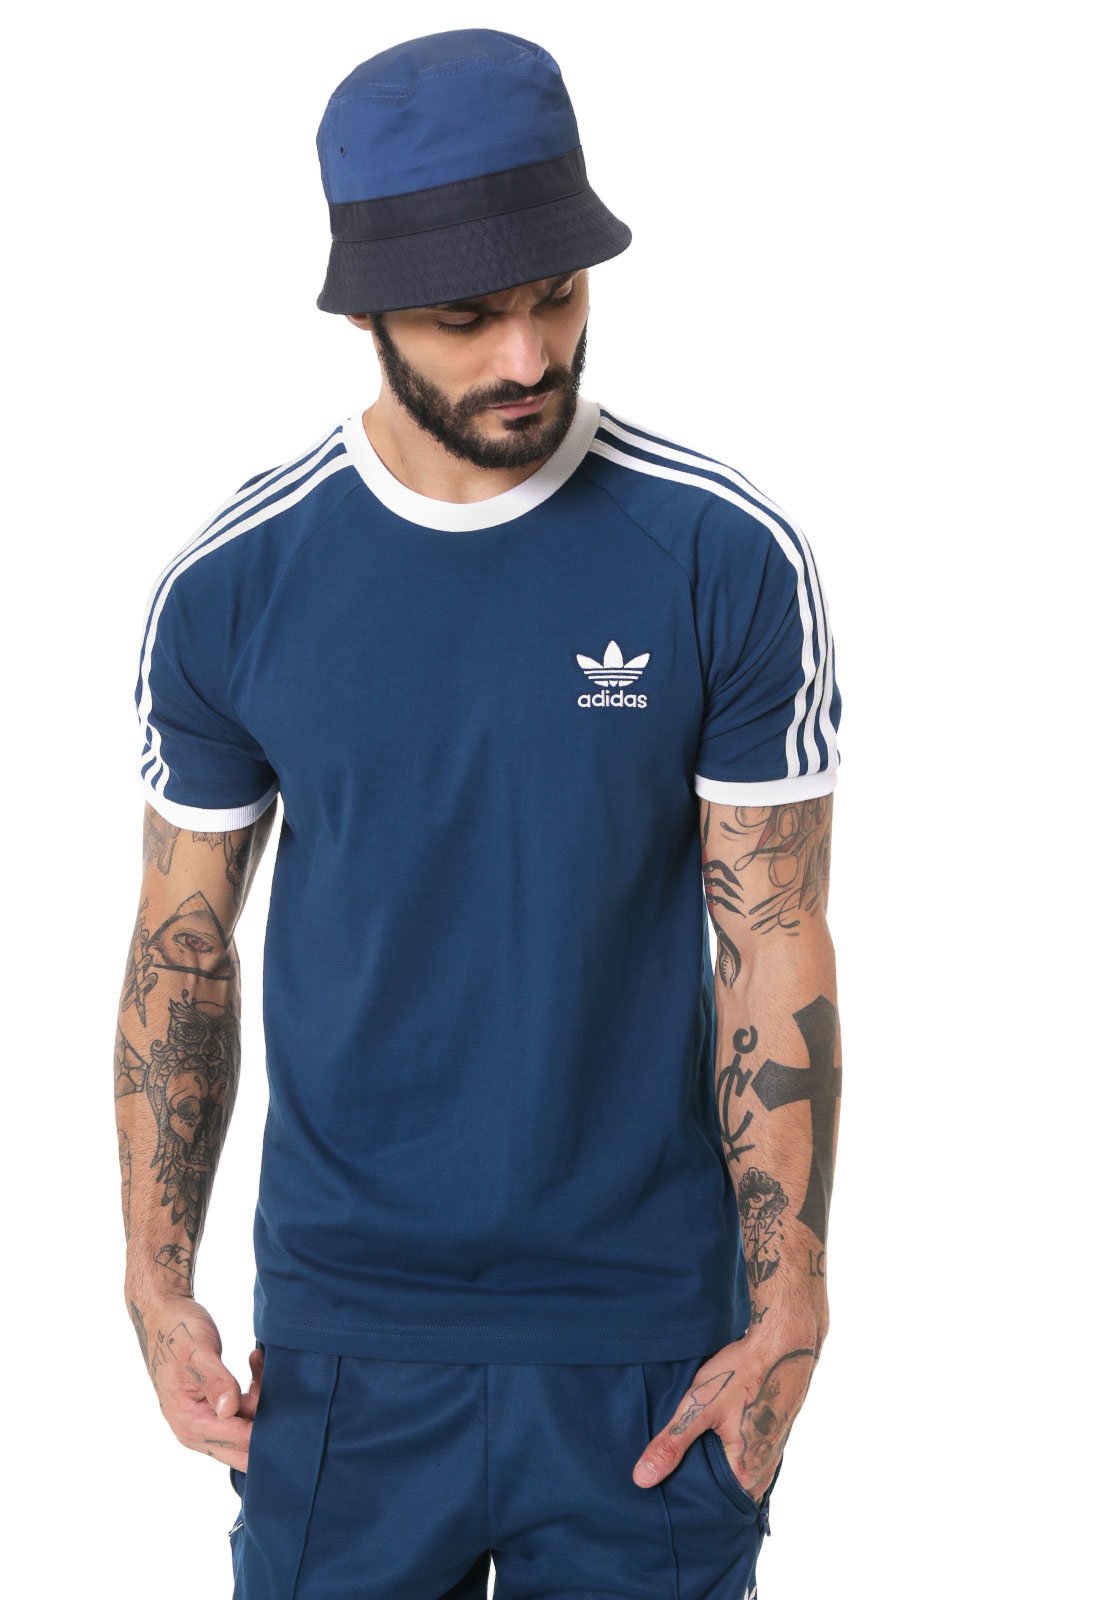 Ambiguity coupon Inconvenience Camisa Adidas Originals 3 Stripes Best Sale, 56% OFF | www.activot.com.au